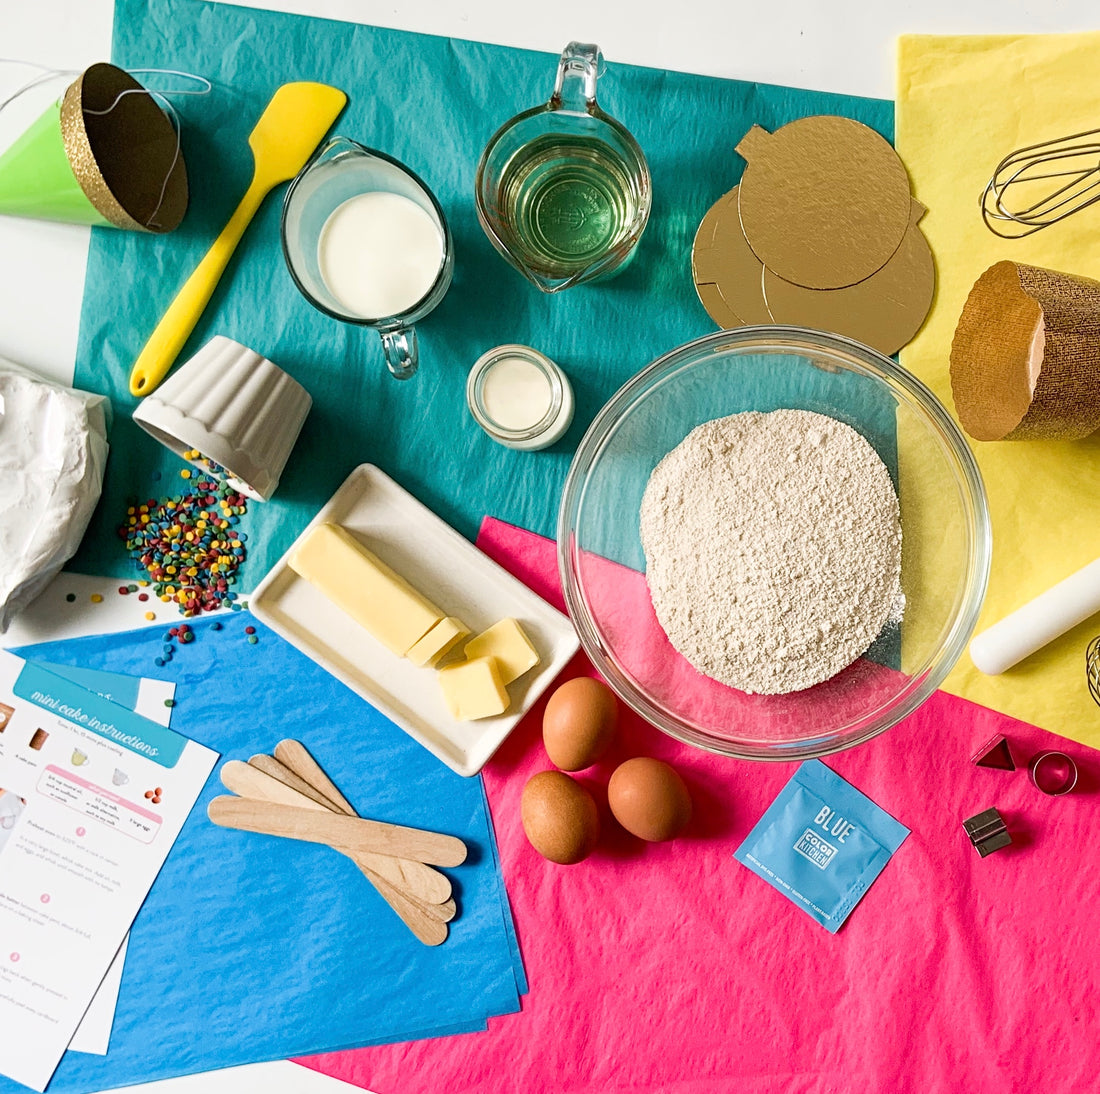 Baking kit ingredients